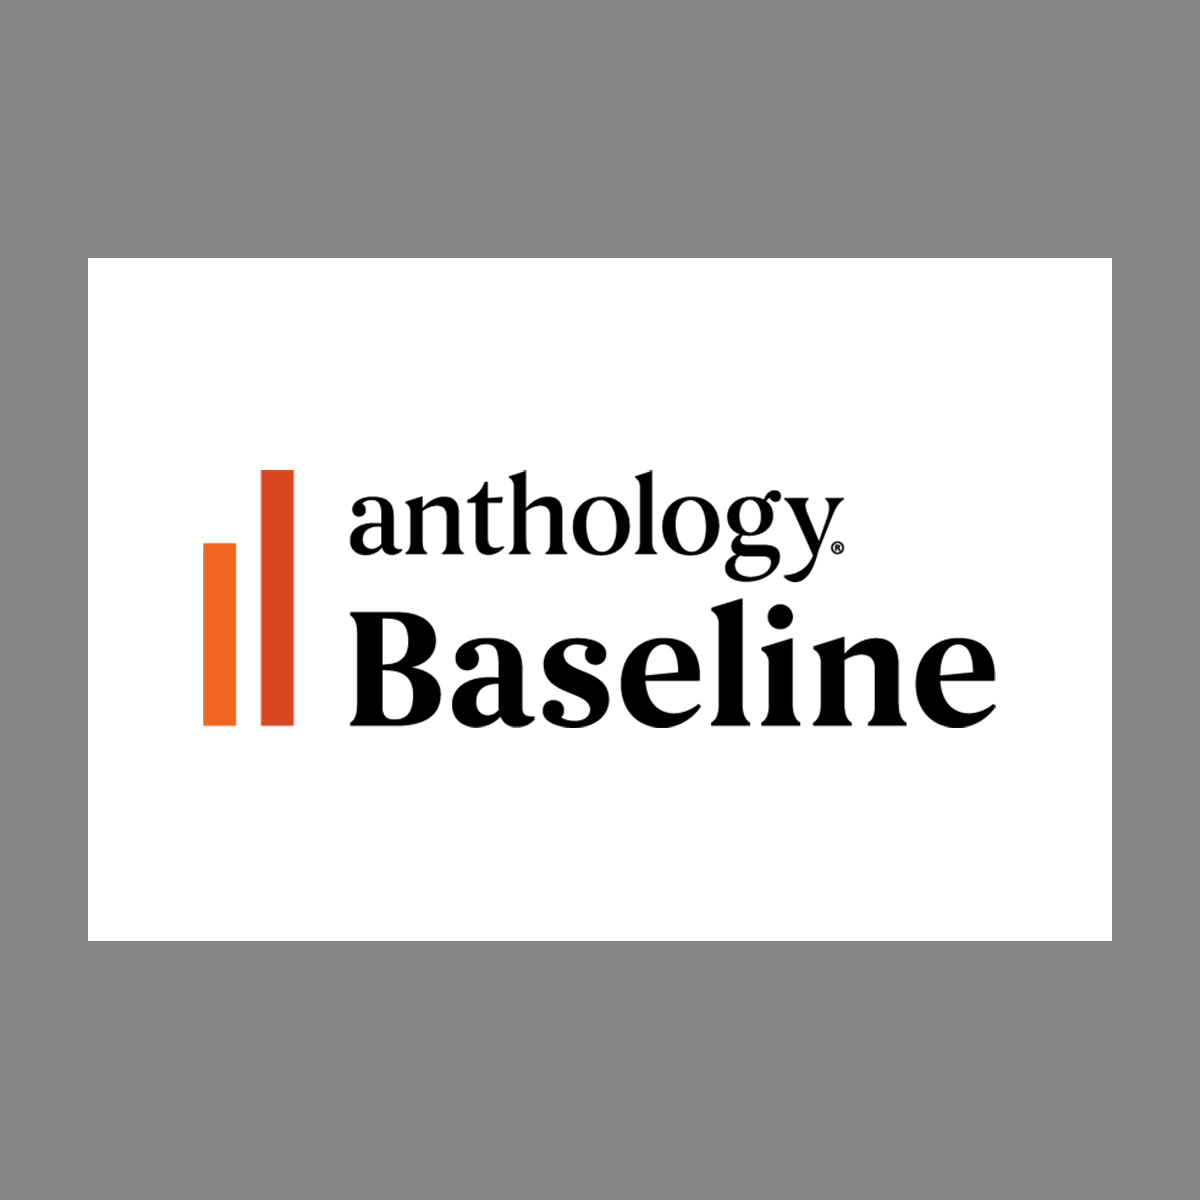 Anthology Baseline